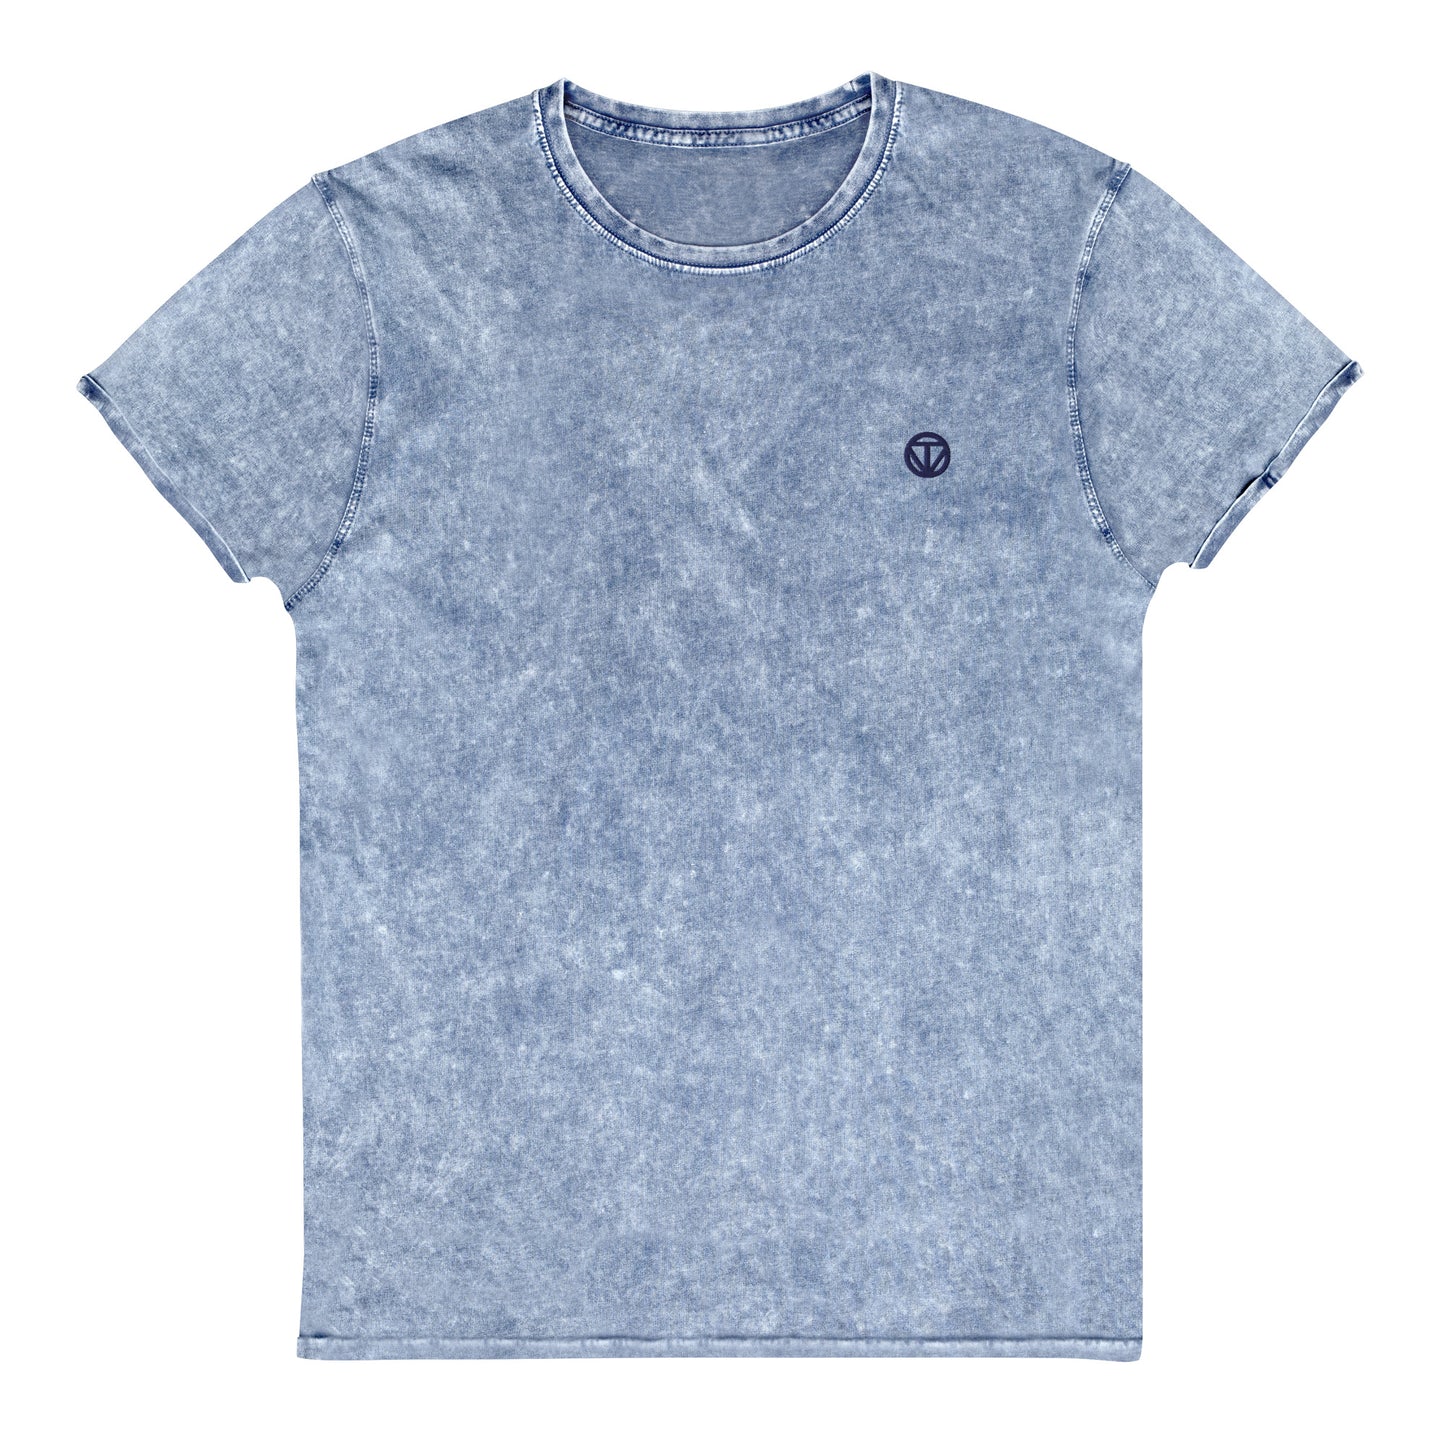 <tc>T-shirt en jean pour femme 23 (Bleu)</tc>